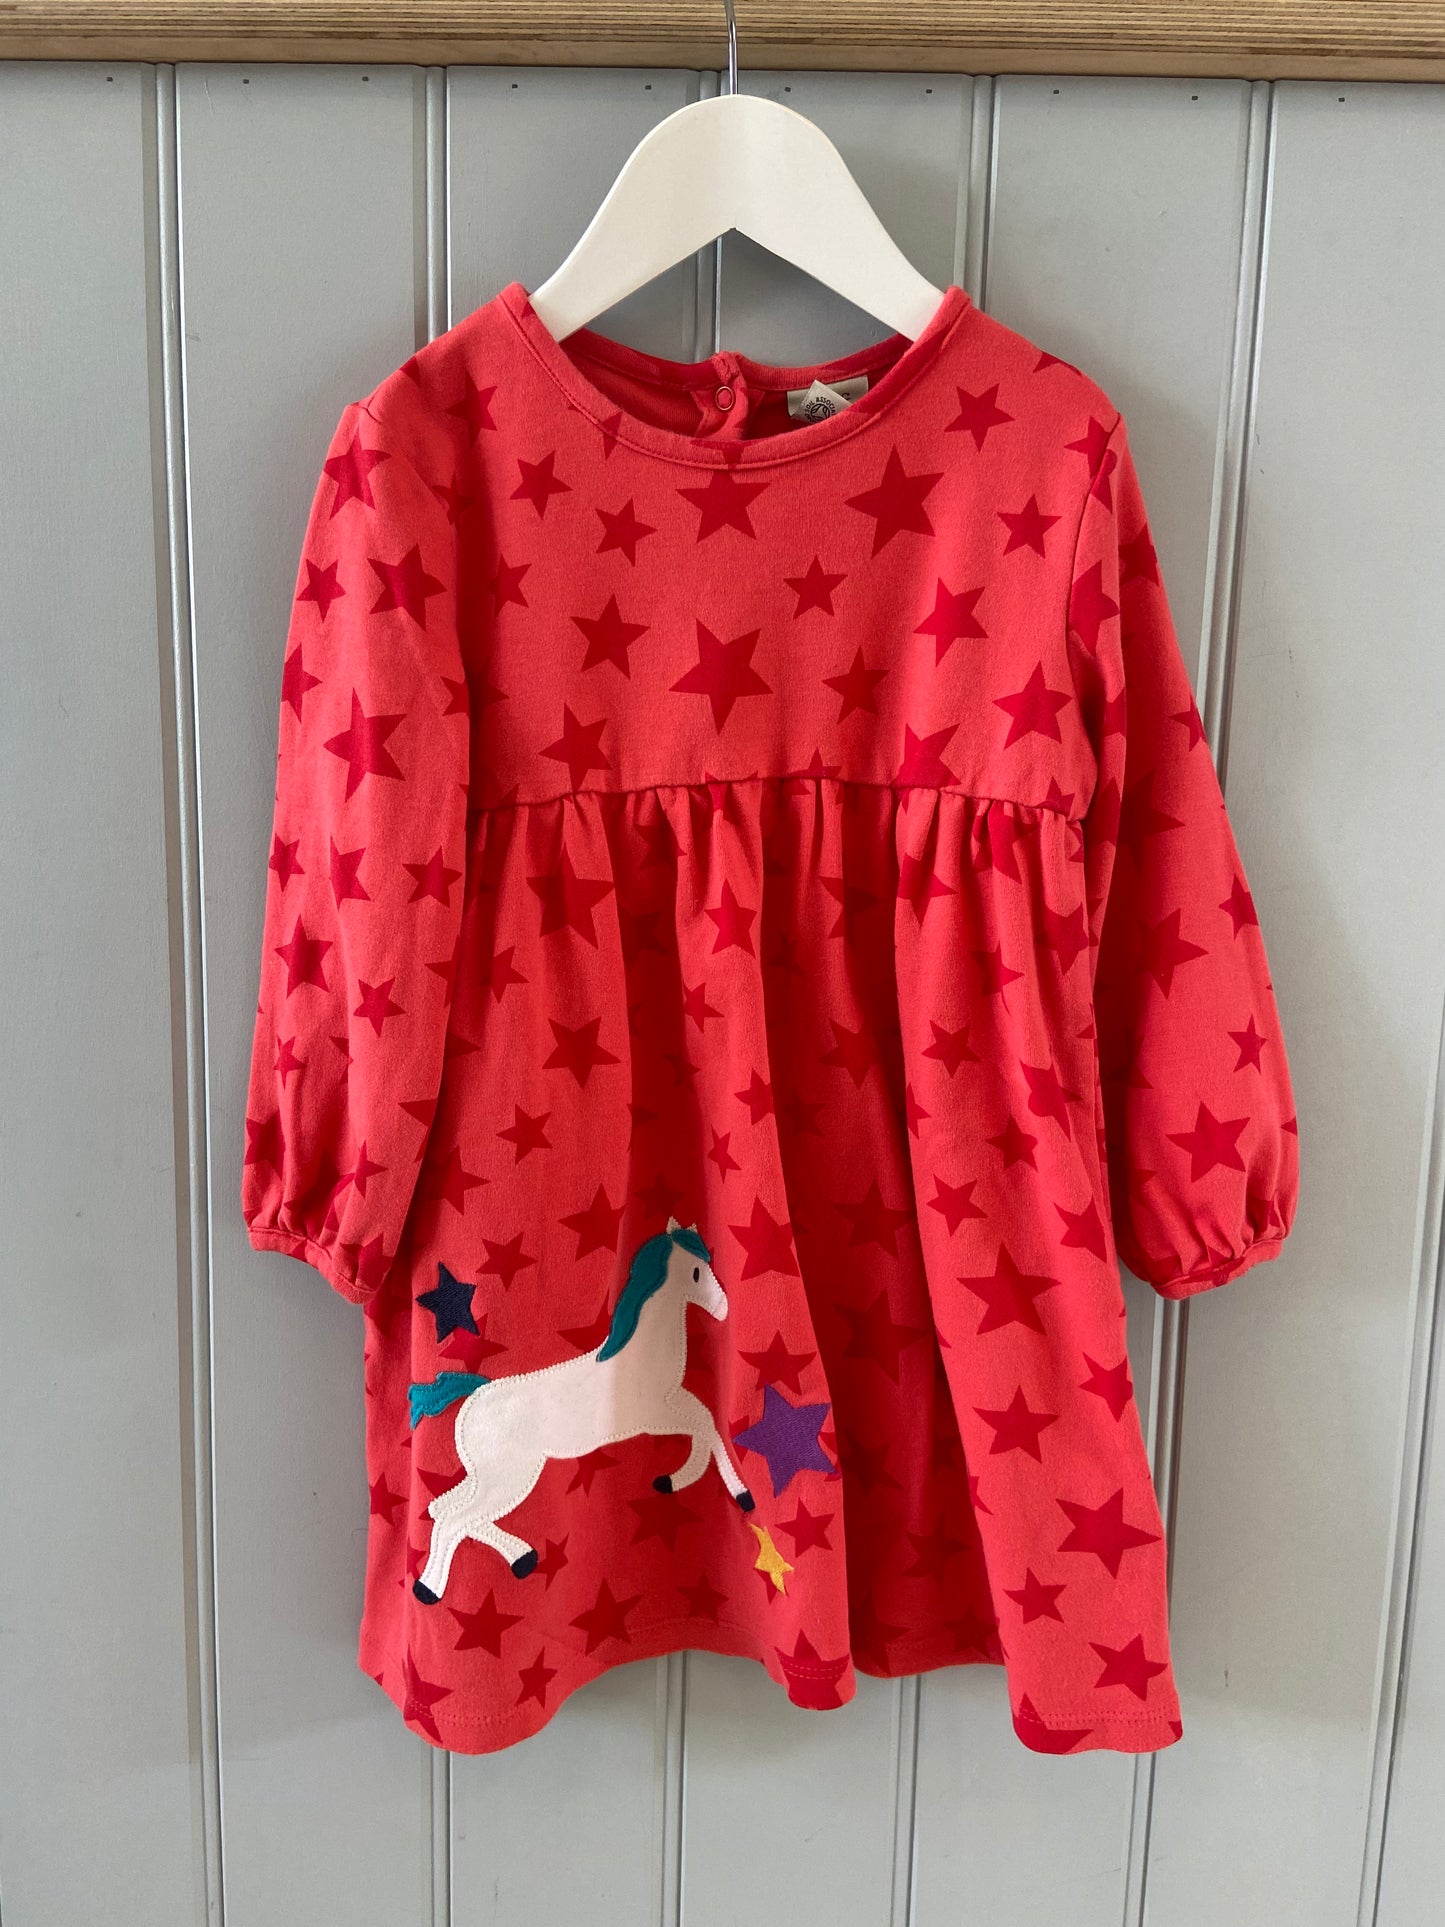 Pre-loved Star Dress by Frugi